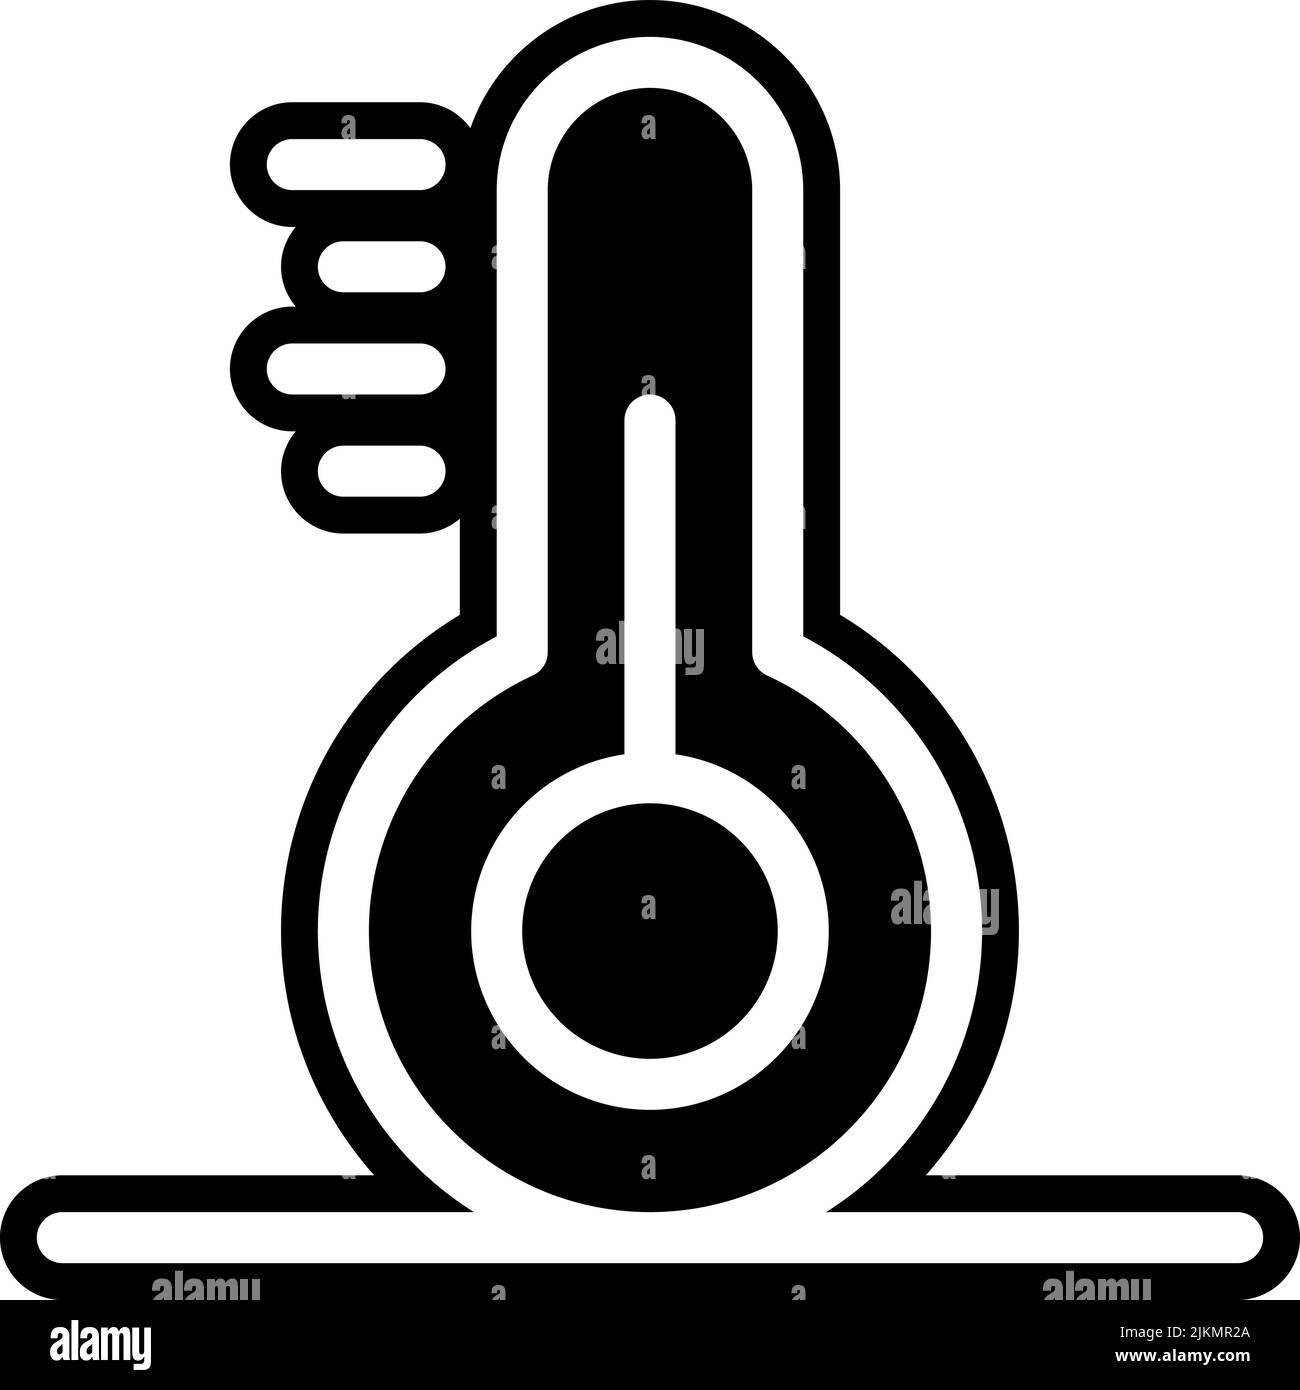 temperature icon black vector illustration. Stock Vector